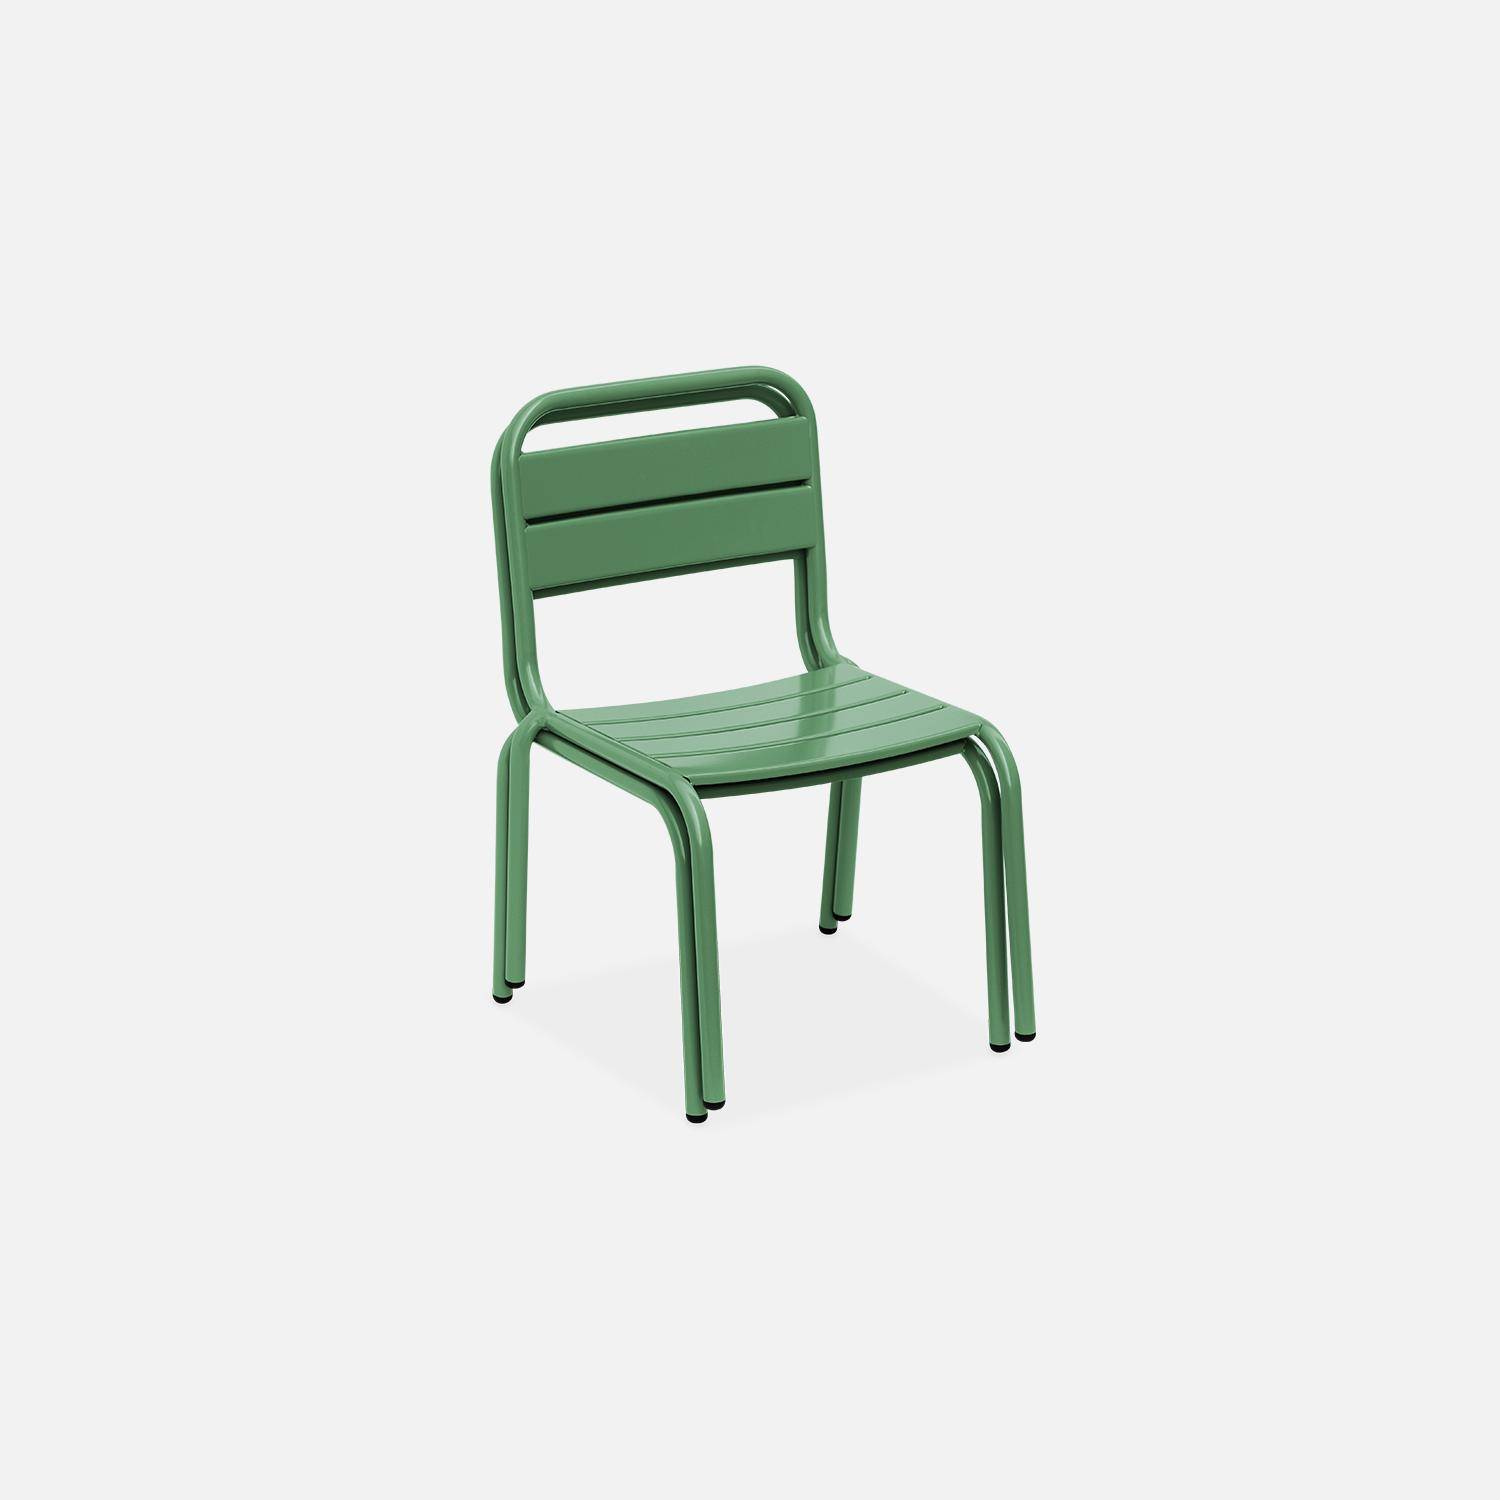 Tisch 48x48cm und 2 Stühle für Kinder, graugrün, 48x48cm, für draußen verwendbar - Anna,sweeek,Photo6